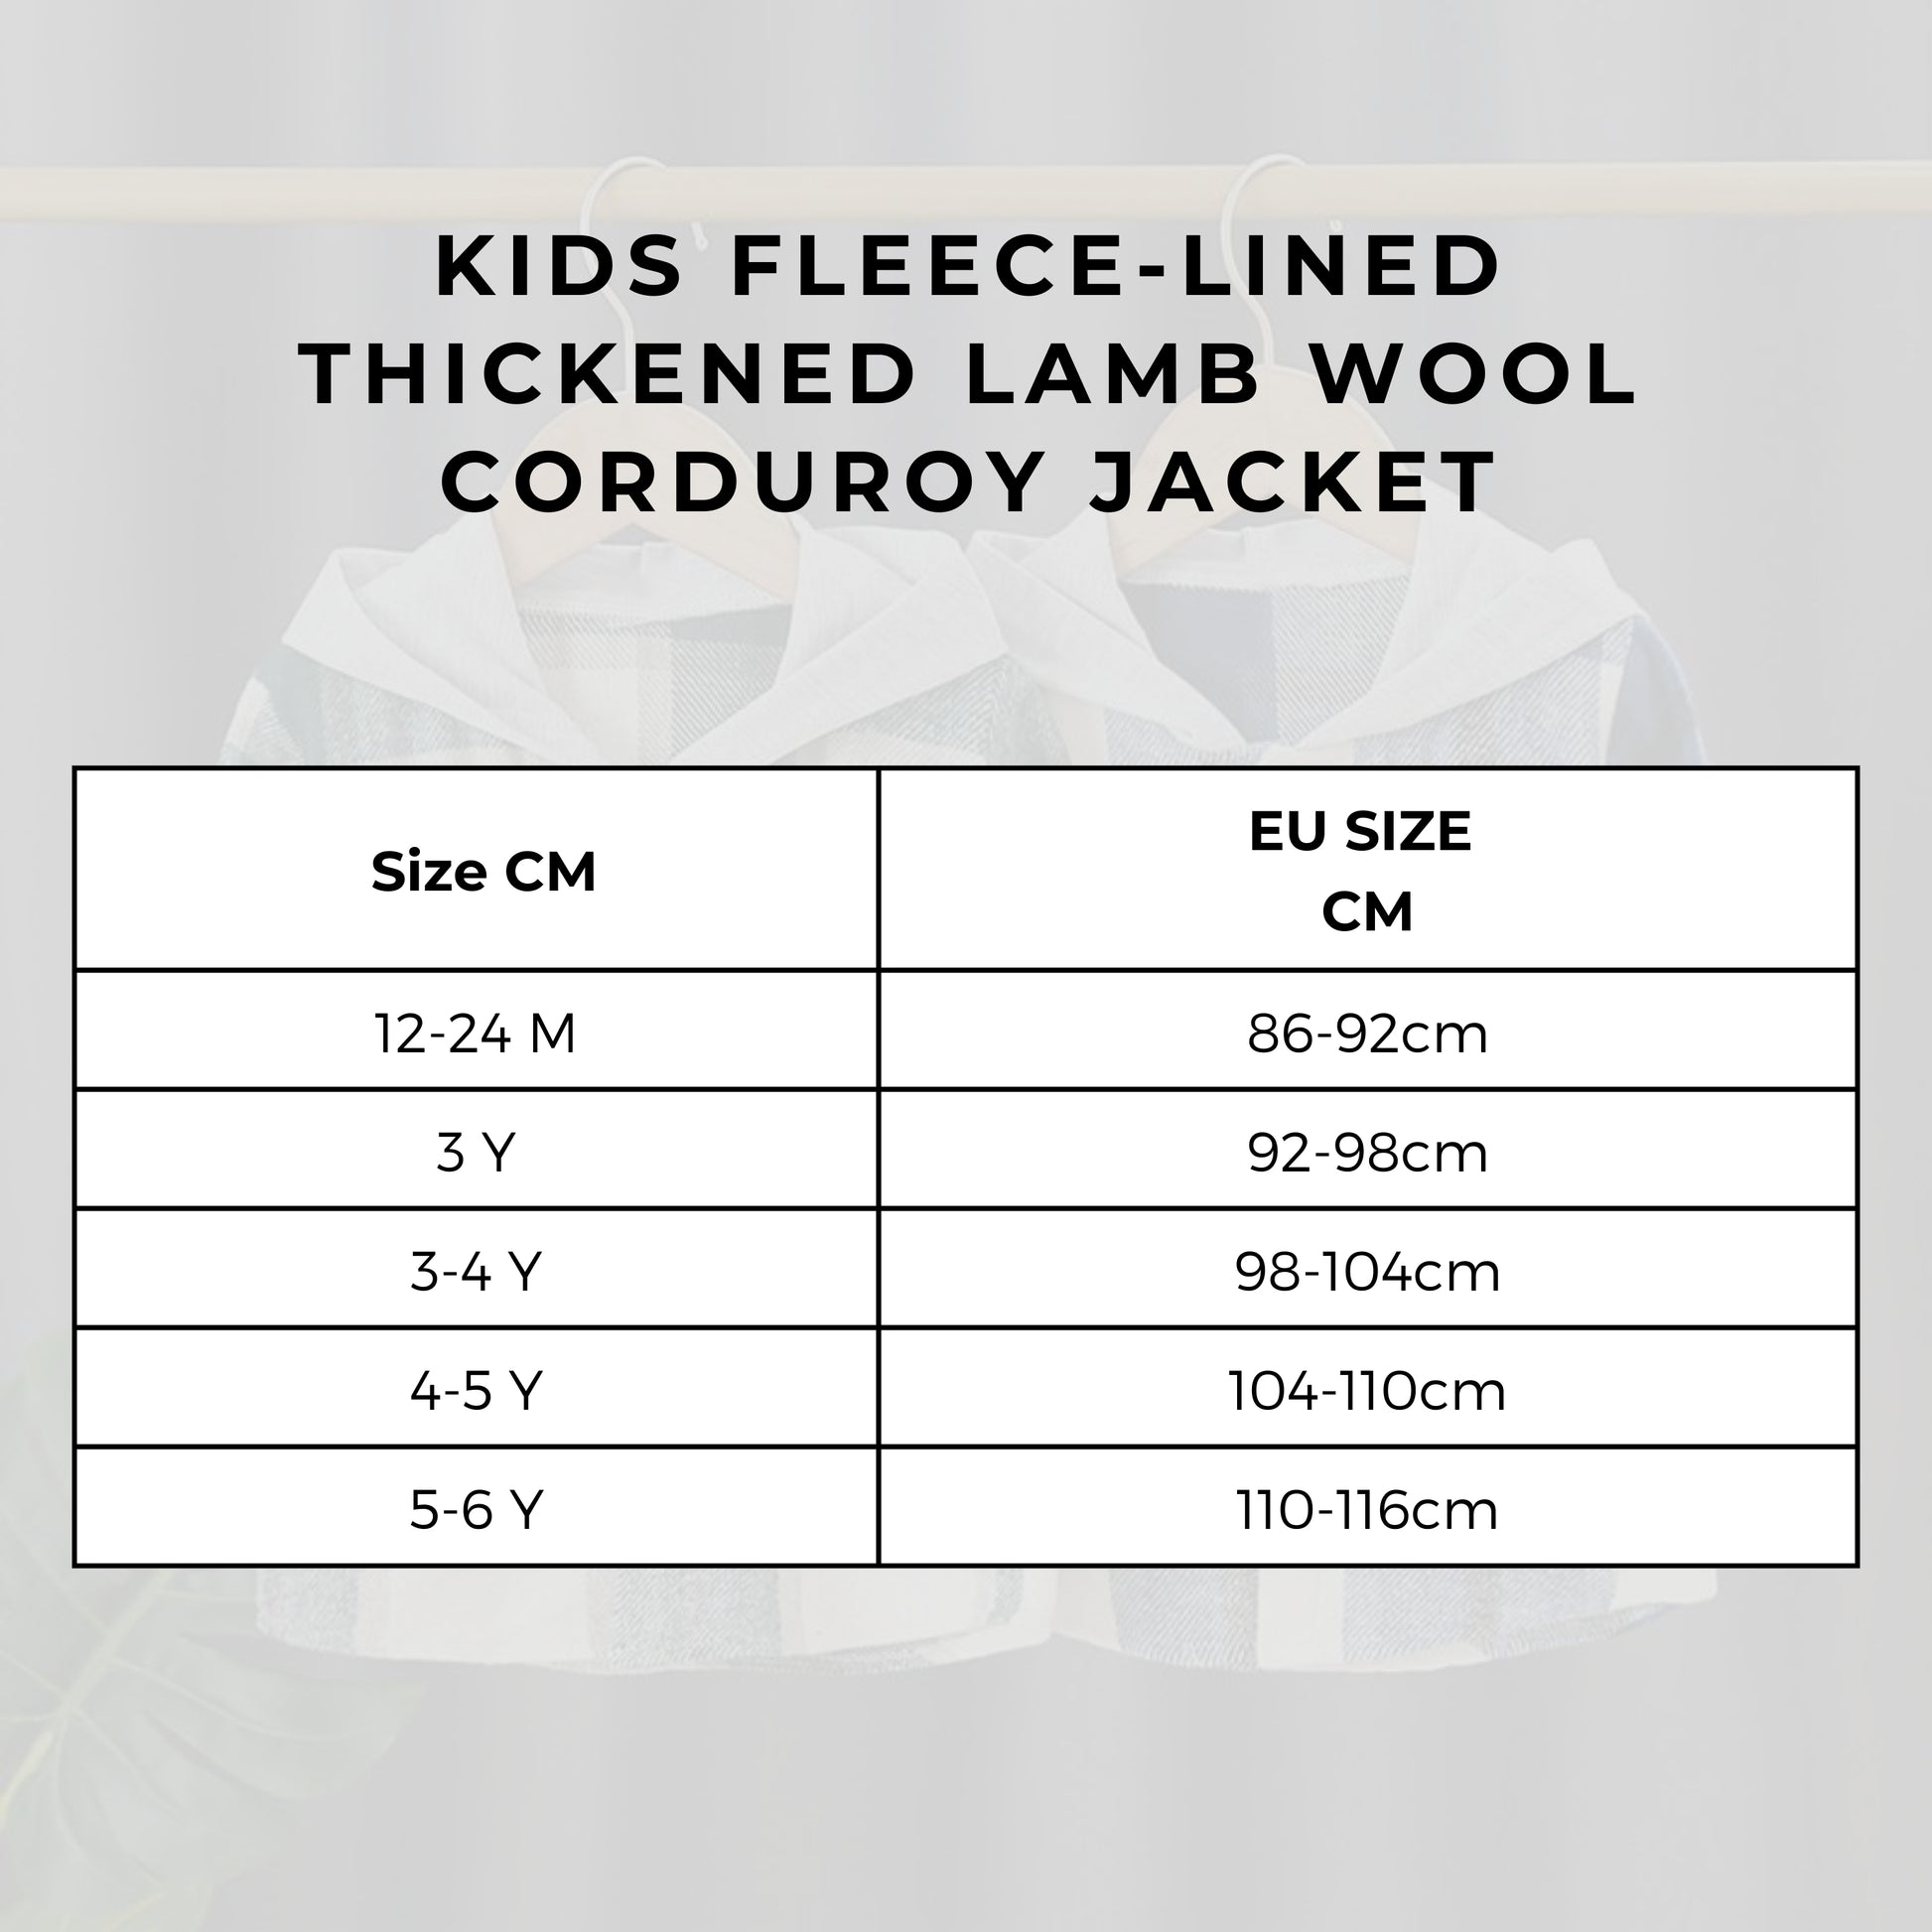 Kids Fleece-lined Thickened Lamb Wool Corduroy Jacket size